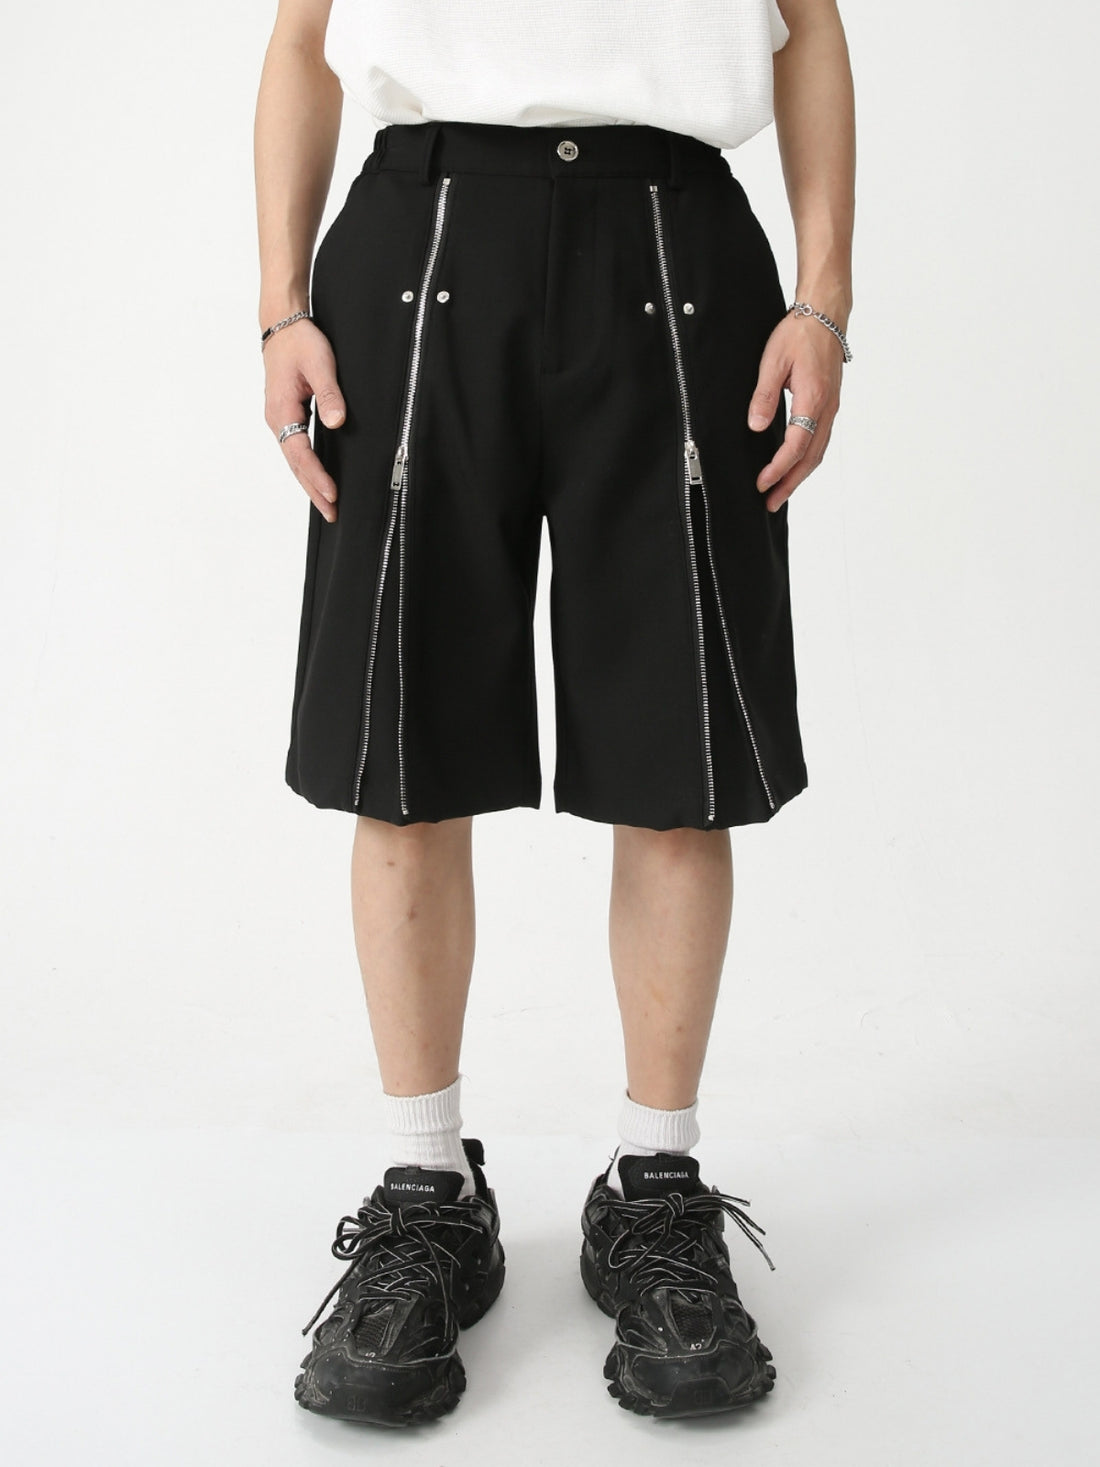 ZIPPERS - Regular Zipper Shorts | Teenwear.eu